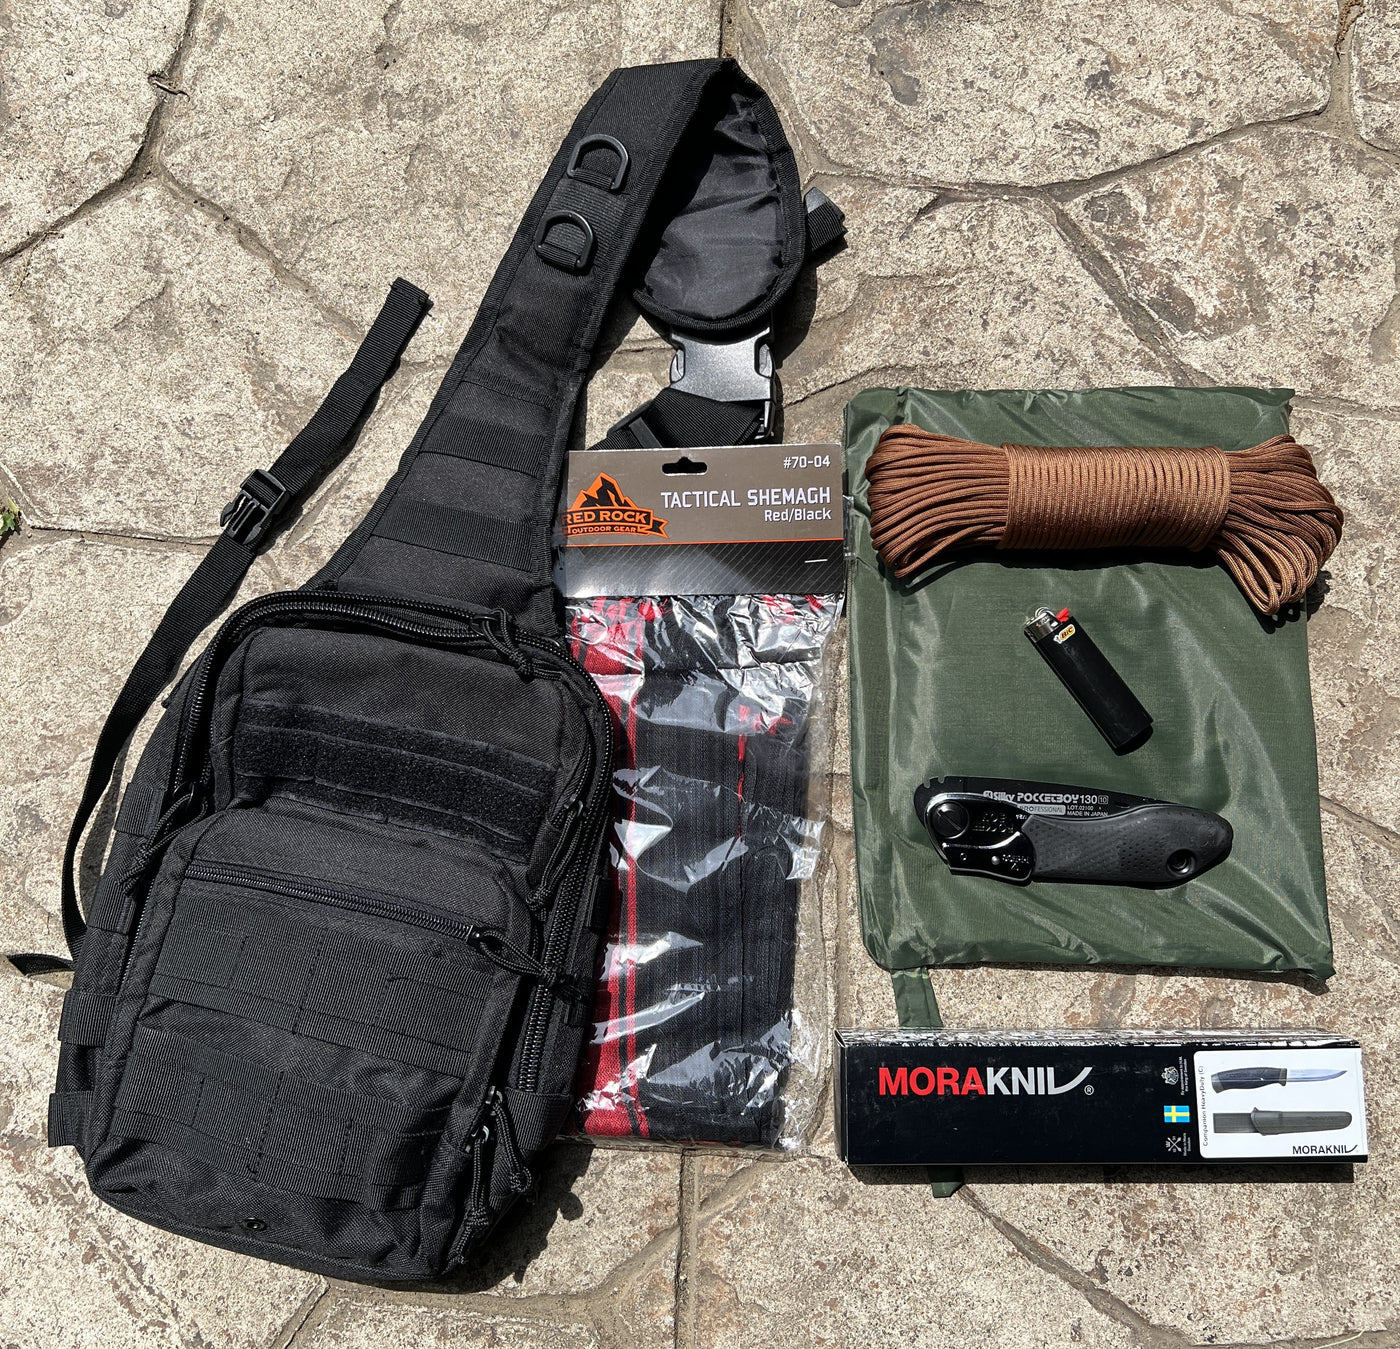 Wildcard Wilderness Survival Kit